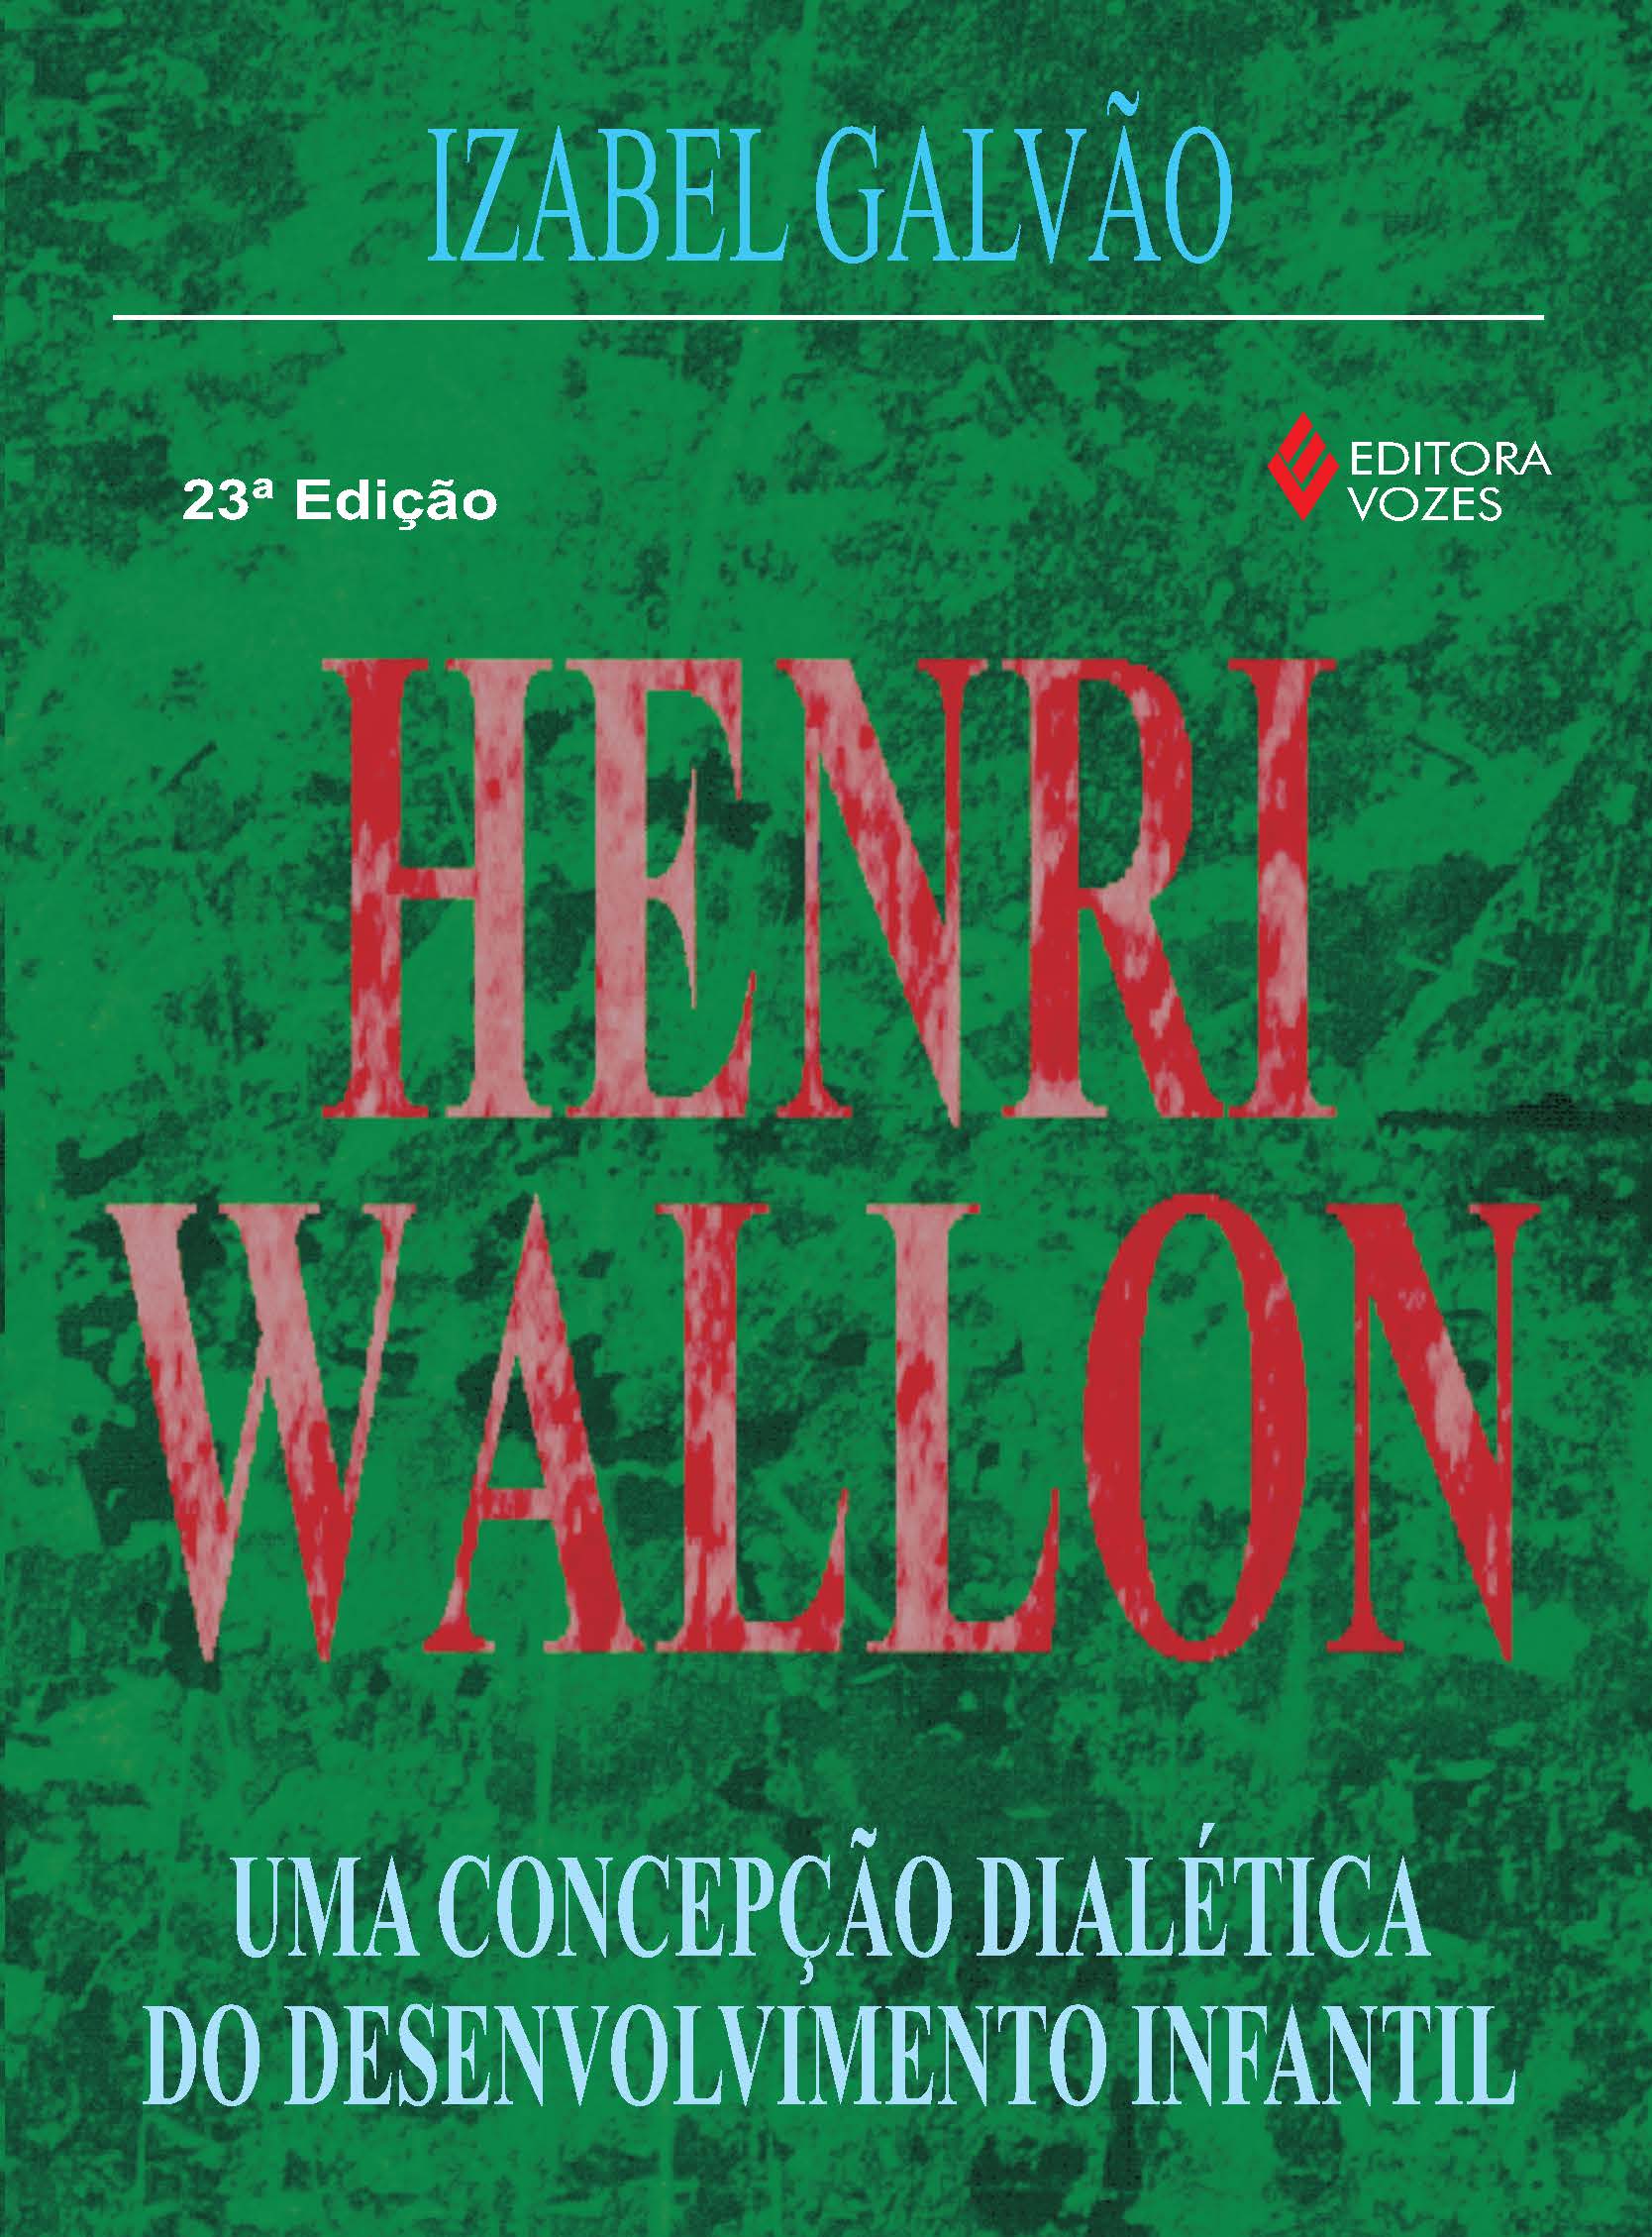 Henri Wallon - 23Ed/14